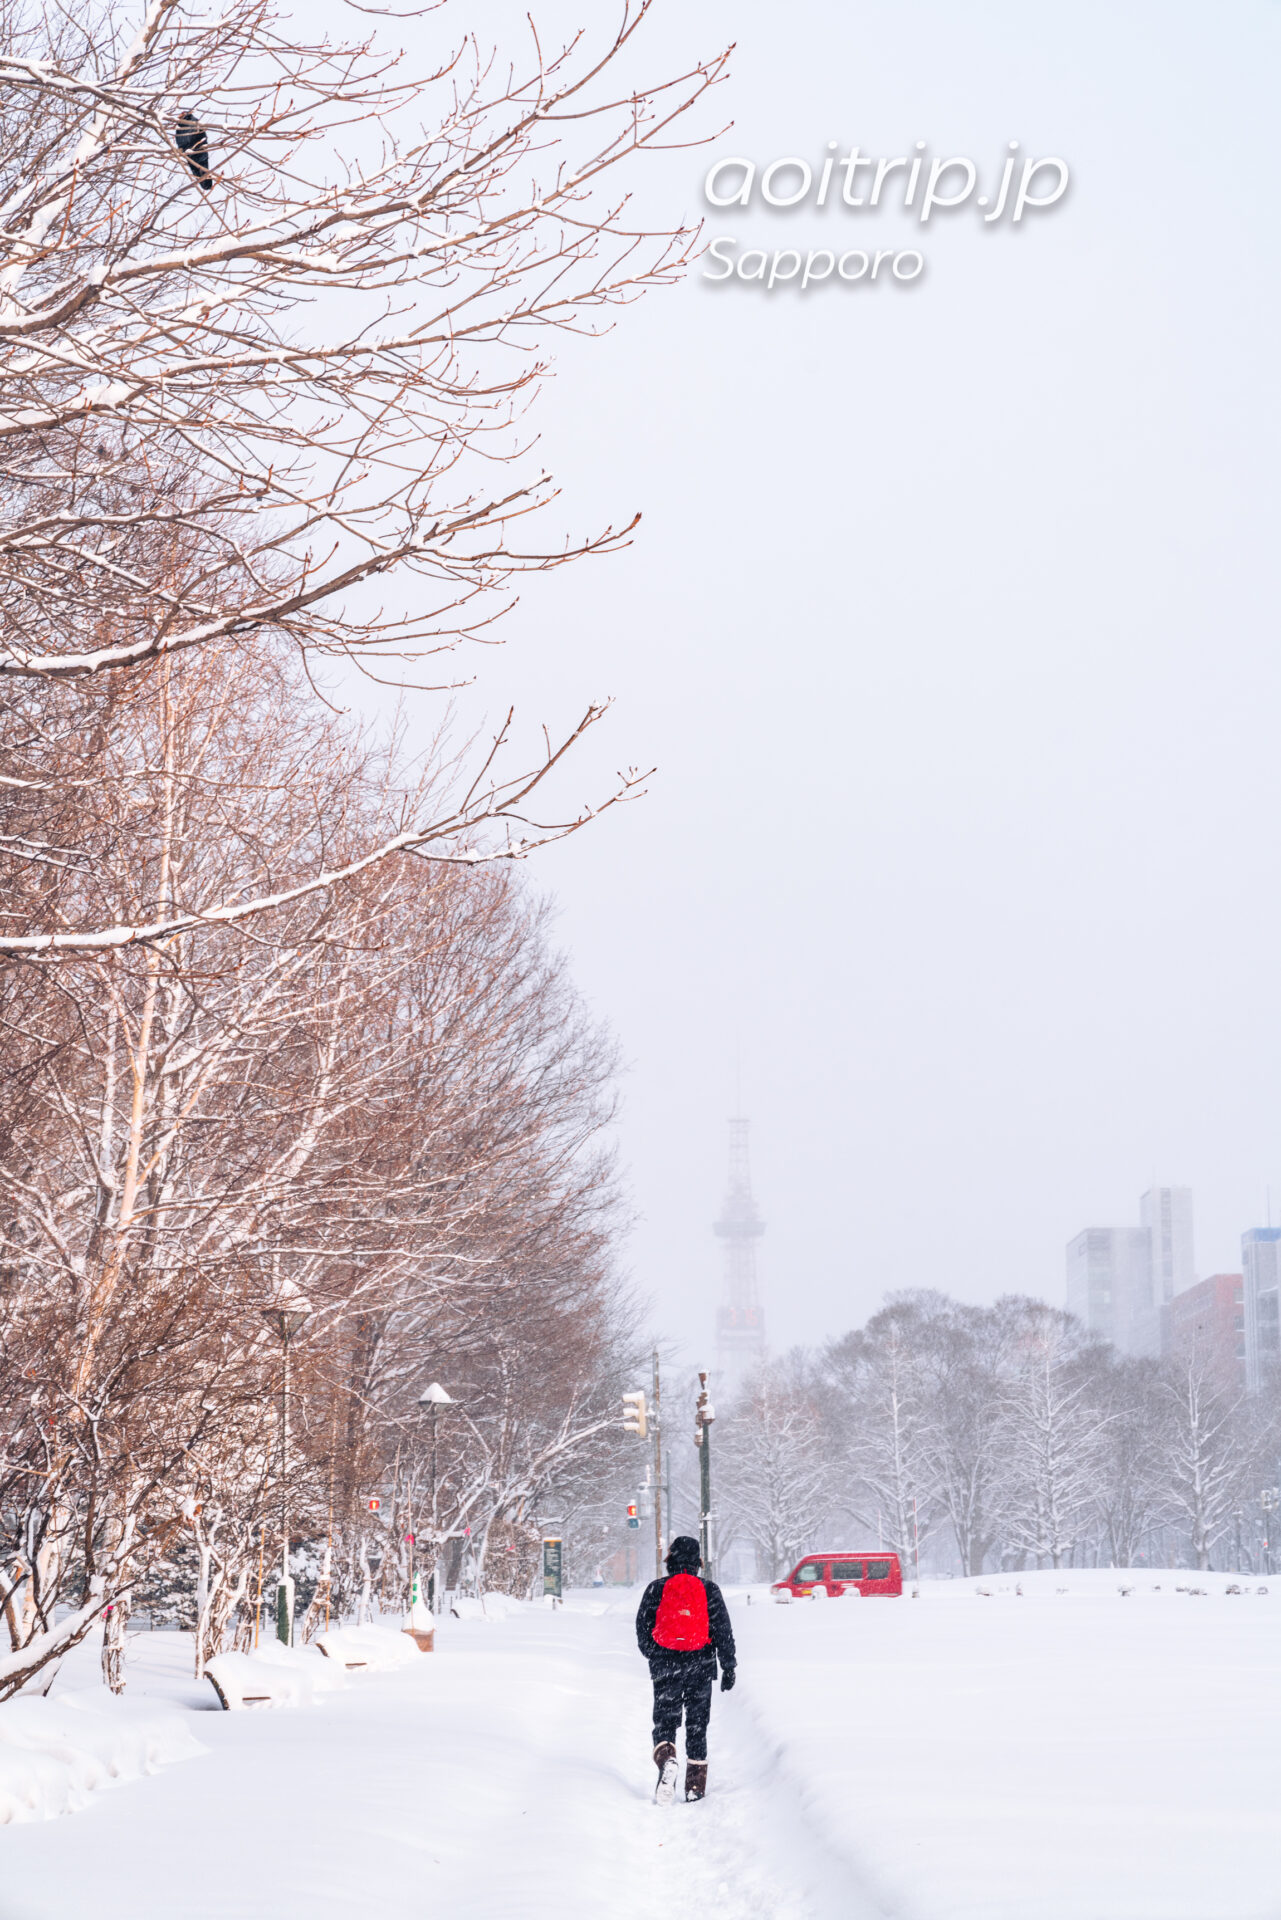 冬の大通公園 雪景色とさっぽろテレビ塔